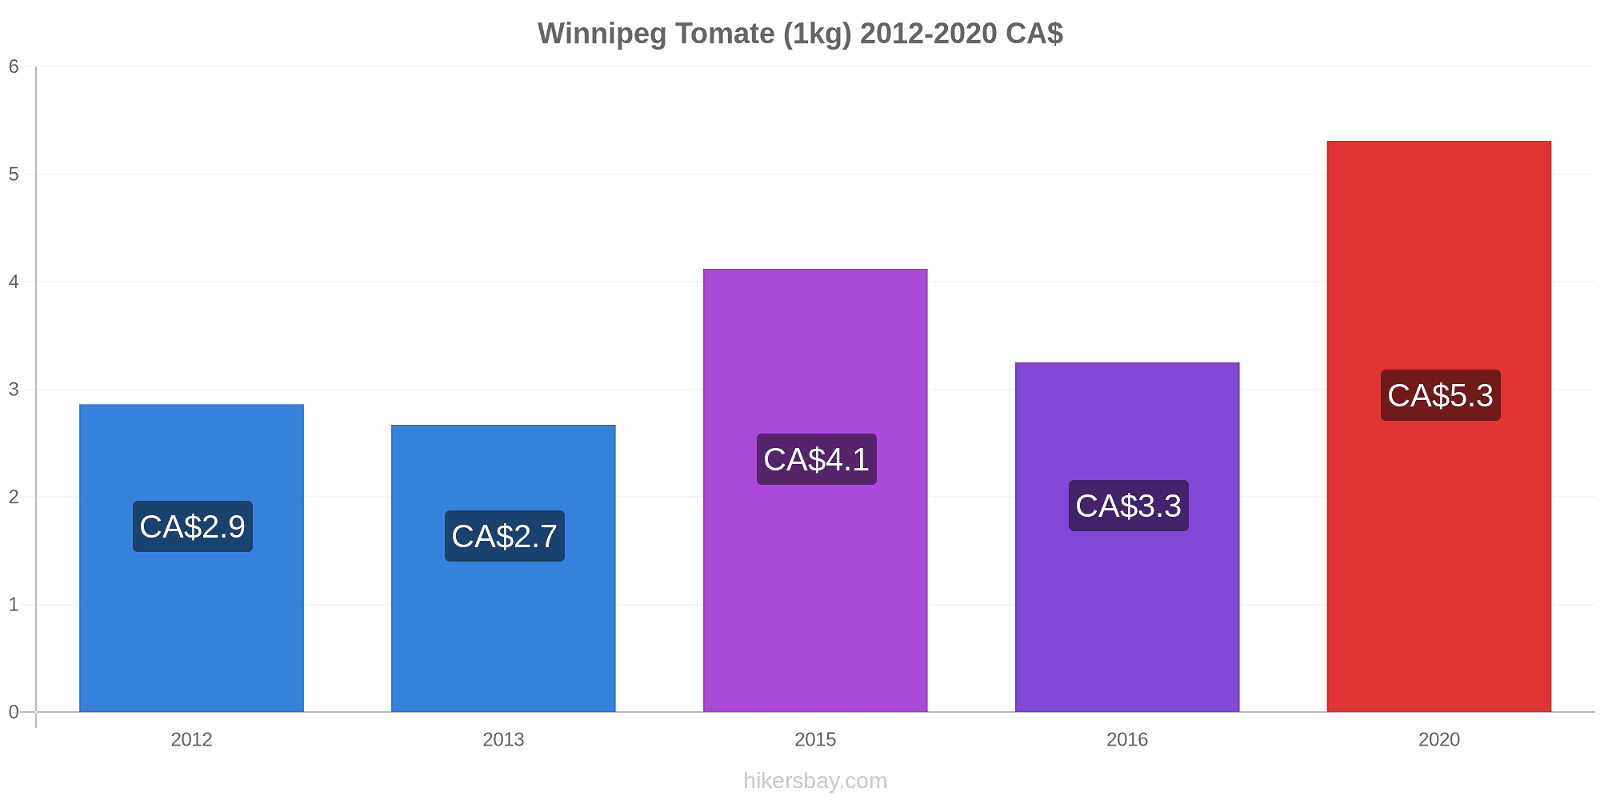 Winnipeg changements de prix Tomate (1kg) hikersbay.com